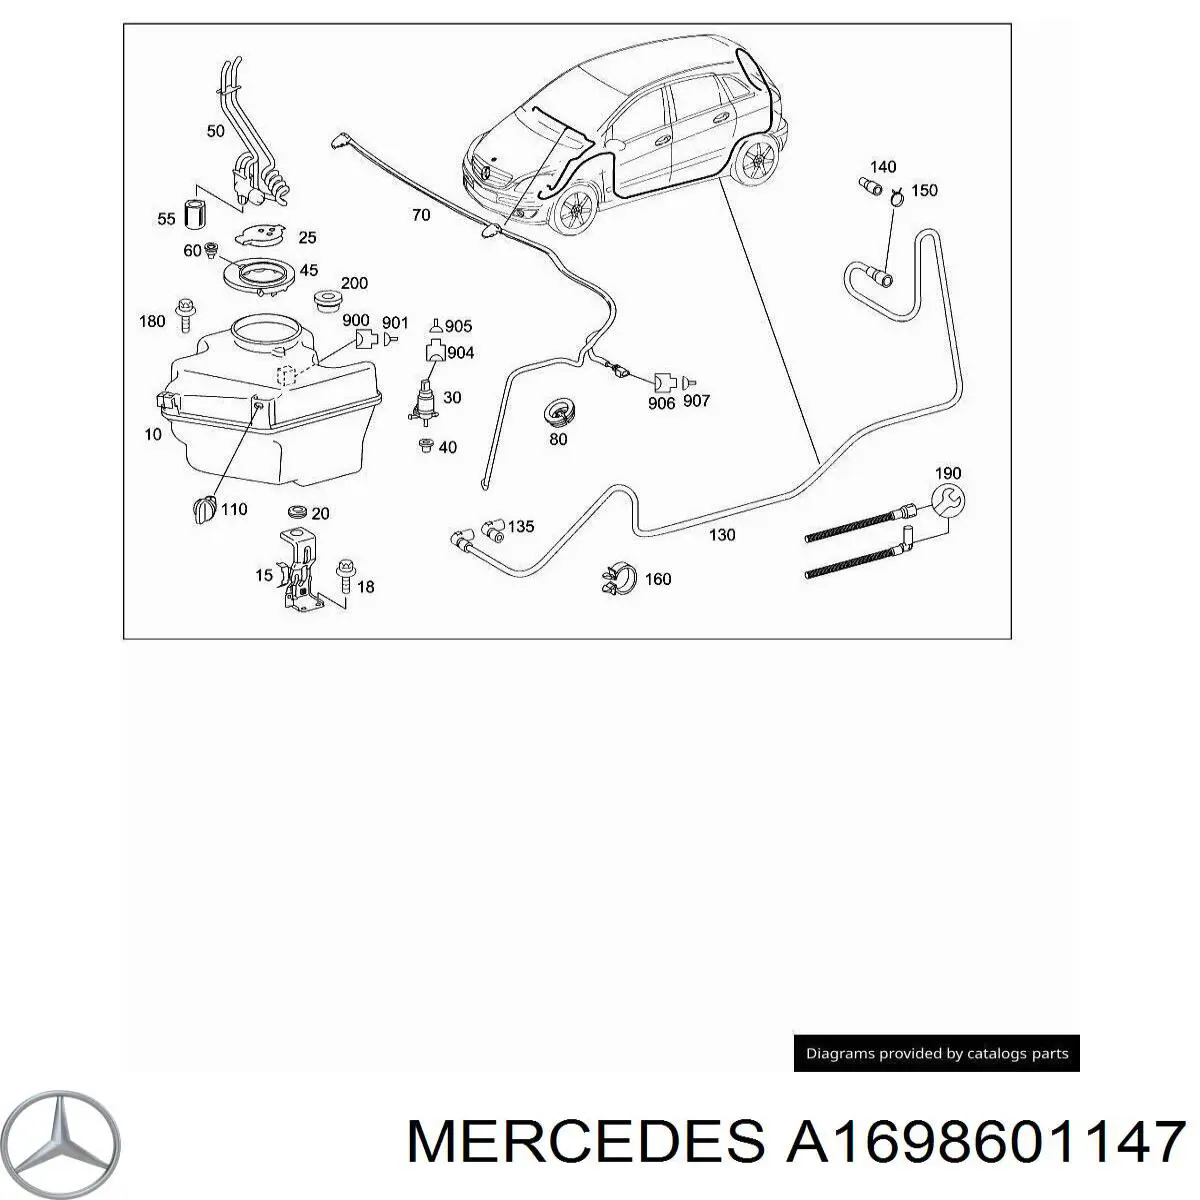 A1698601147 Mercedes форсунка омывателя фары передней левой